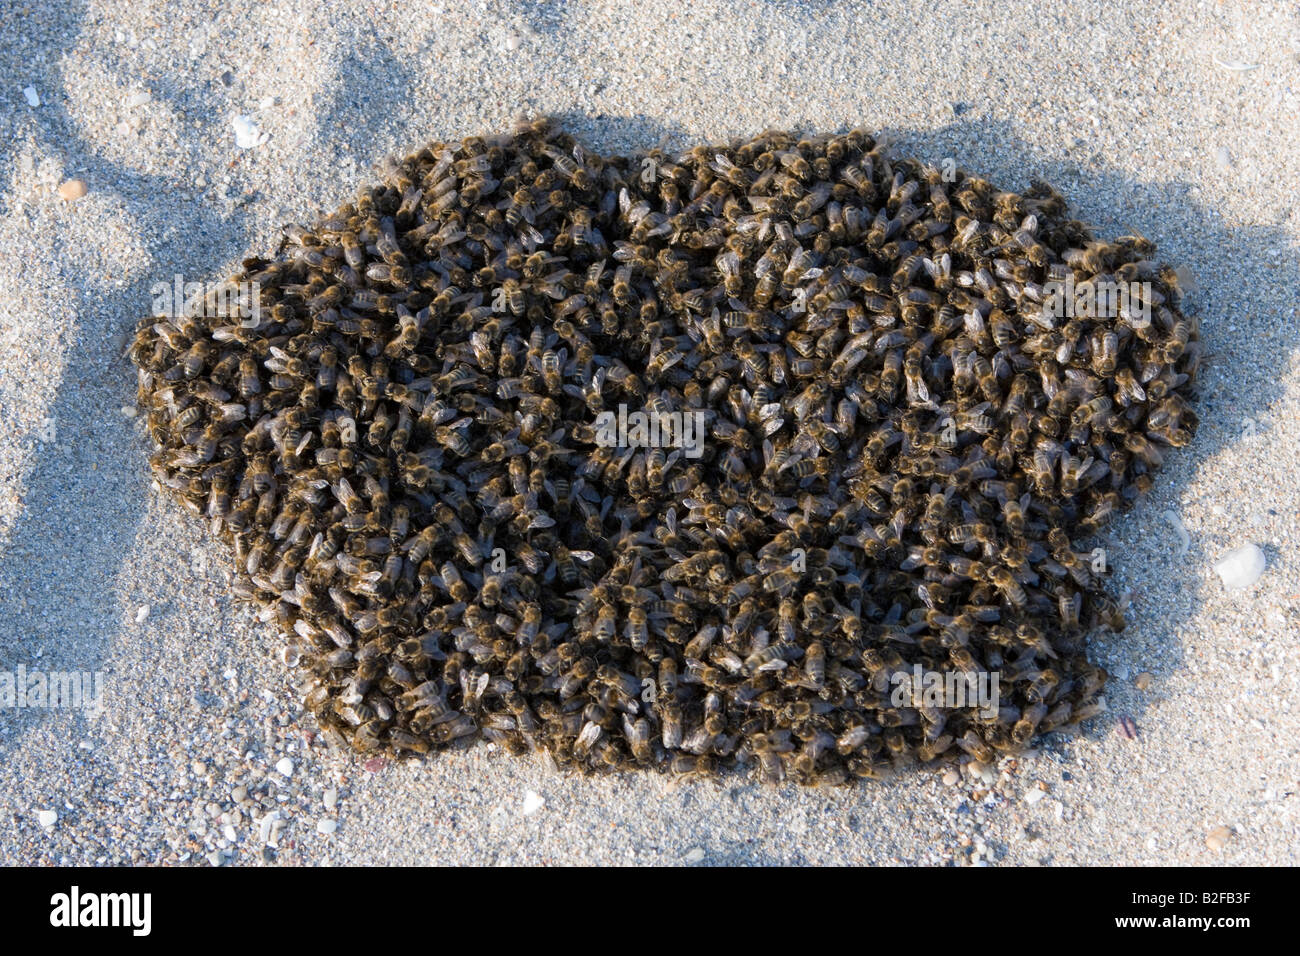 L'essaimage des abeilles sur une plage, Bretagne, France, Europe Banque D'Images